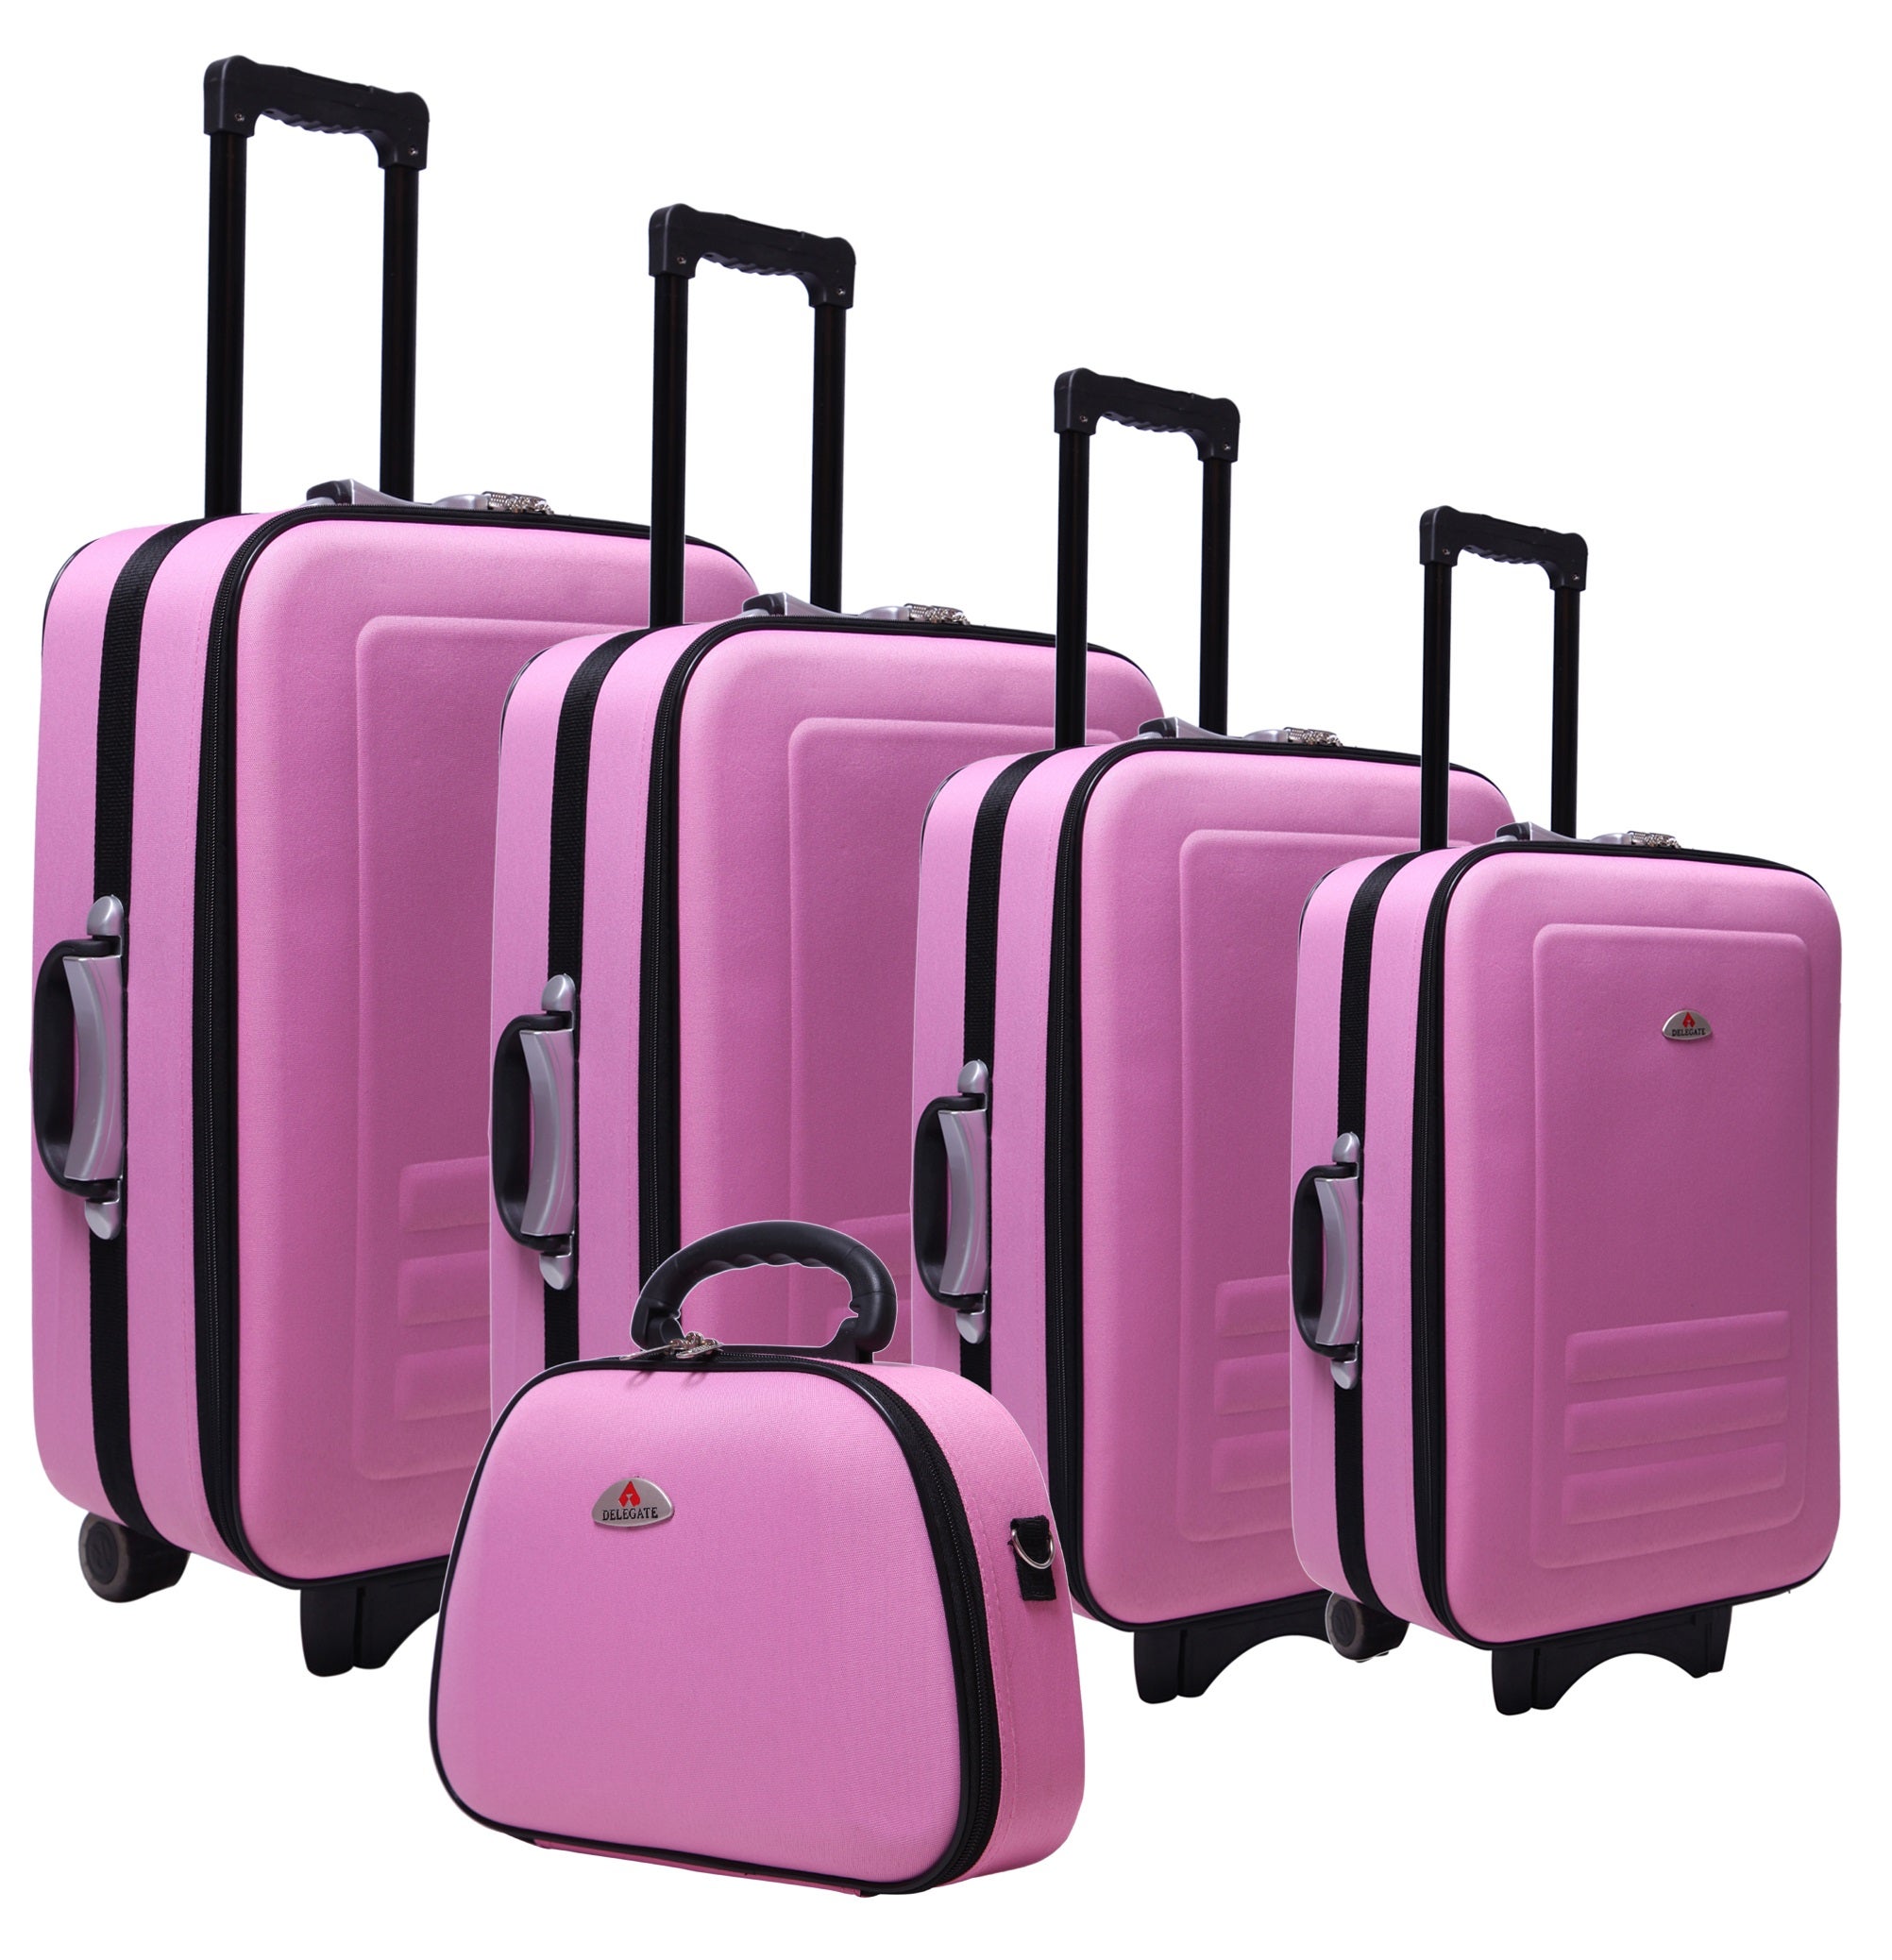 Trolley Luggage Travel Bag